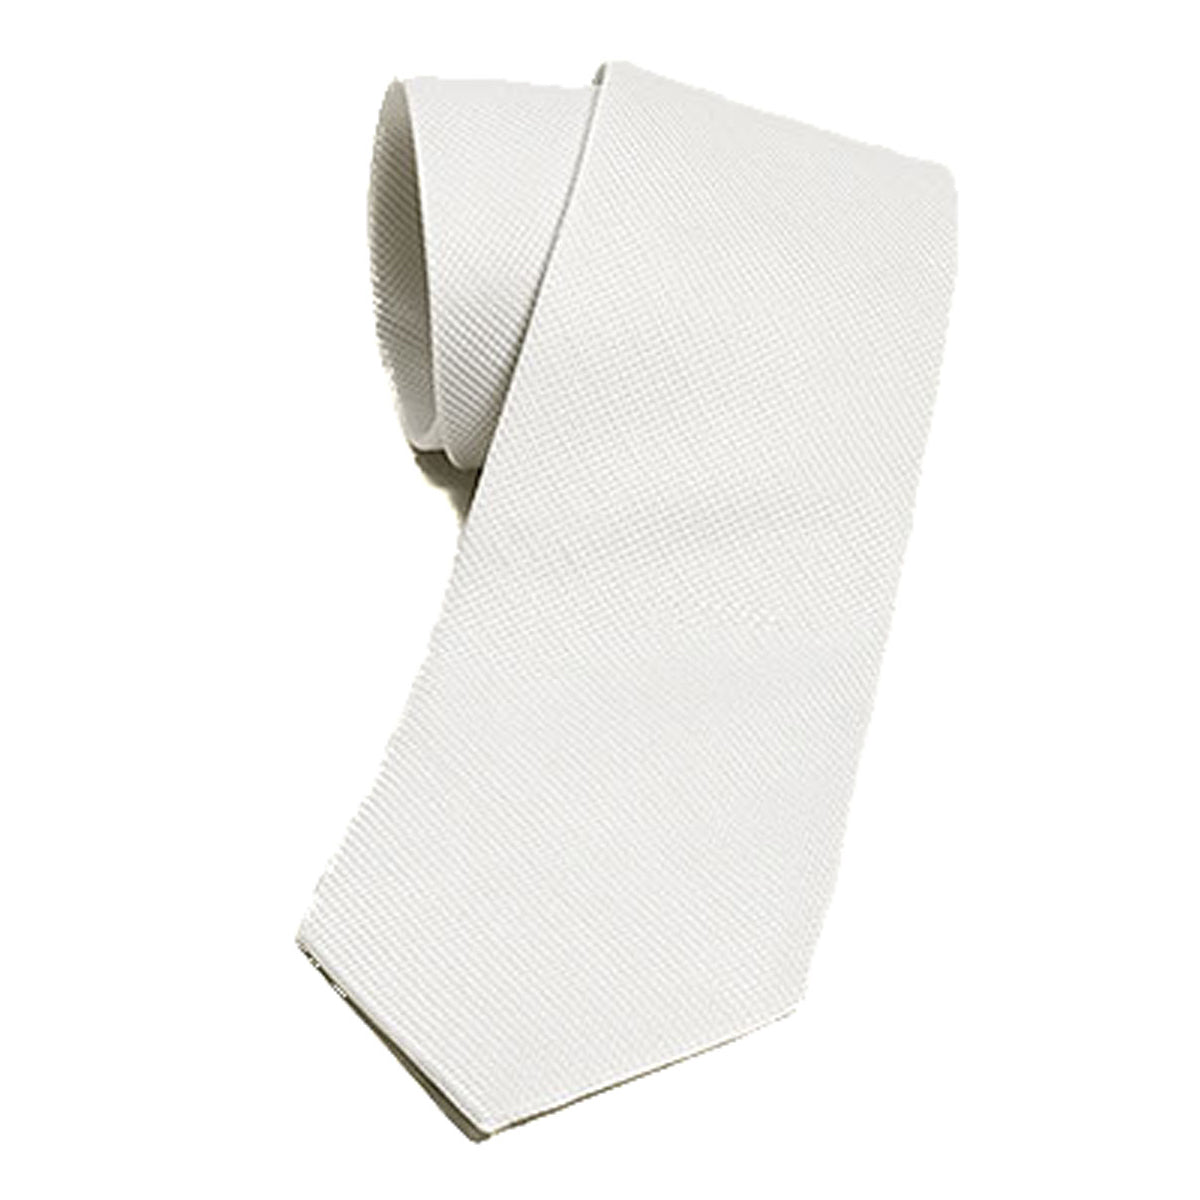 Essex Classics Men's "White Pique" Neck Tie